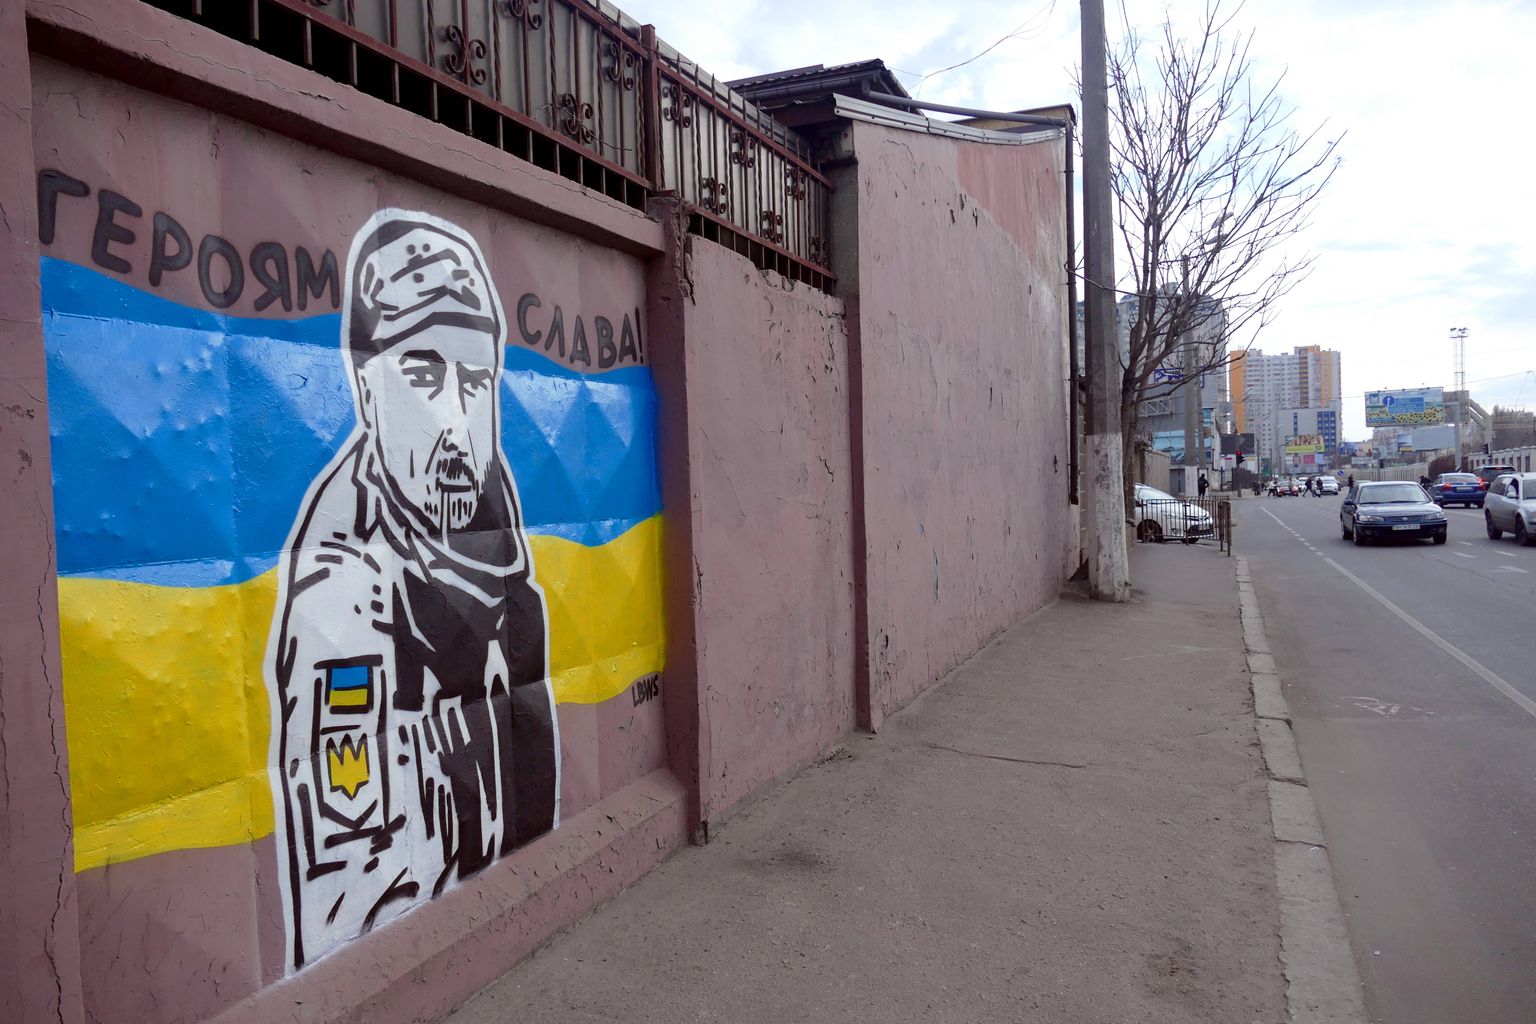 Ukrainas Odessas seinale tehtud grafiti, mis kujutab Ukraina sõdurit, kes väidetavalt Vene üksuse poolt hukati. Sotsiaalmeedias levib selle kohta video. Ukraina võimude andmetel oli see mees 30. eraldiseisva mehhaniseeritud brigaadi sõdur Tõmofi Šadura